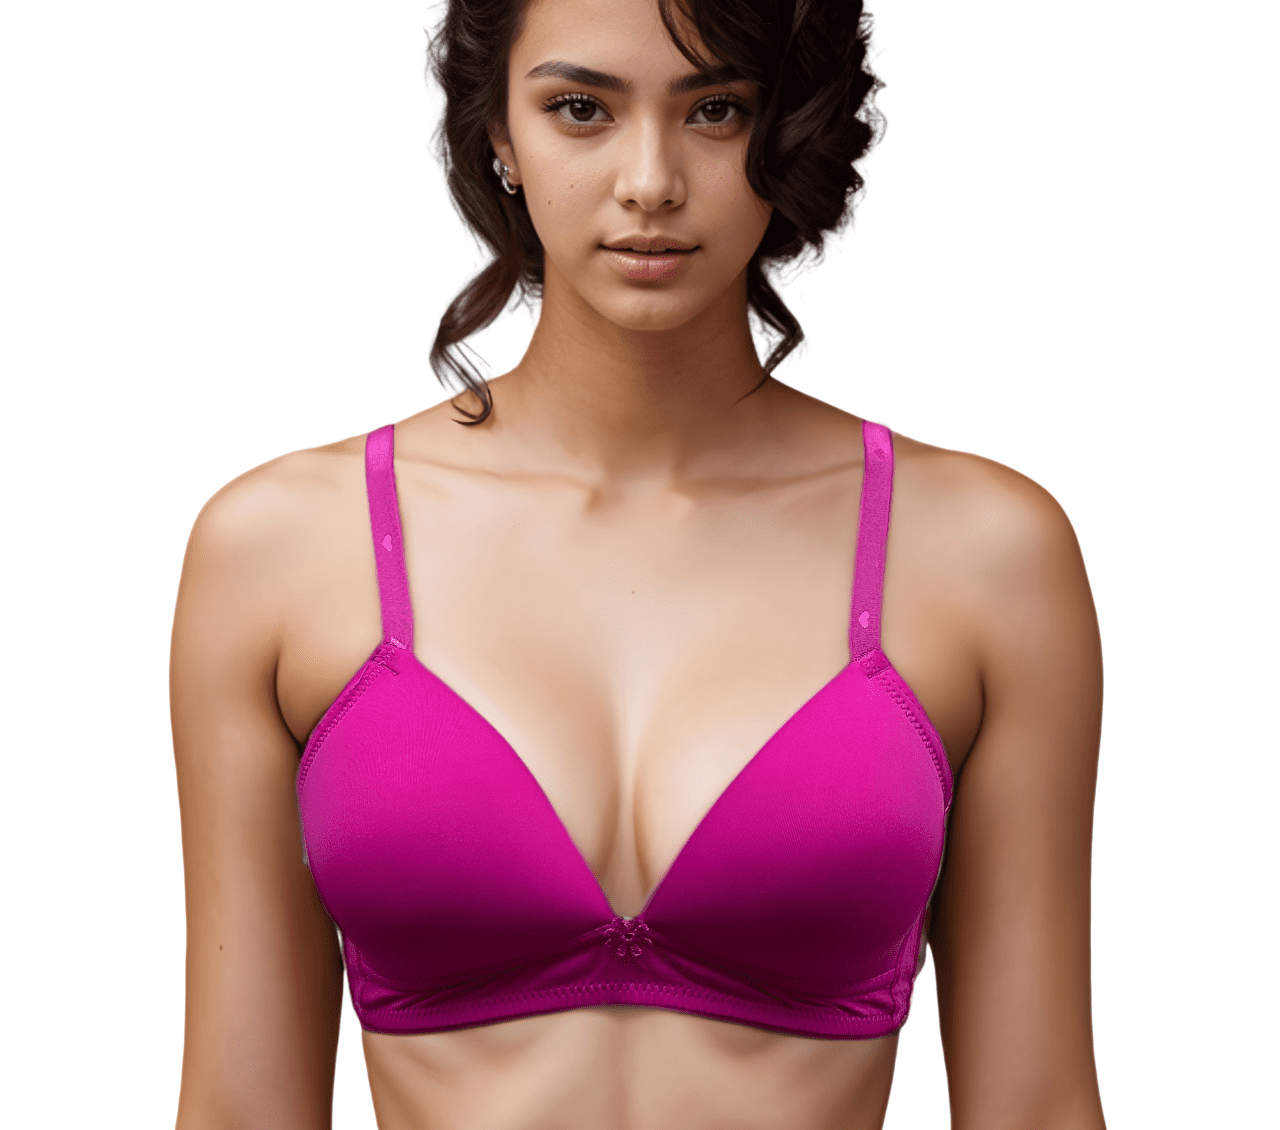 Women fancy net bra free size (28-32)inch pack of 1